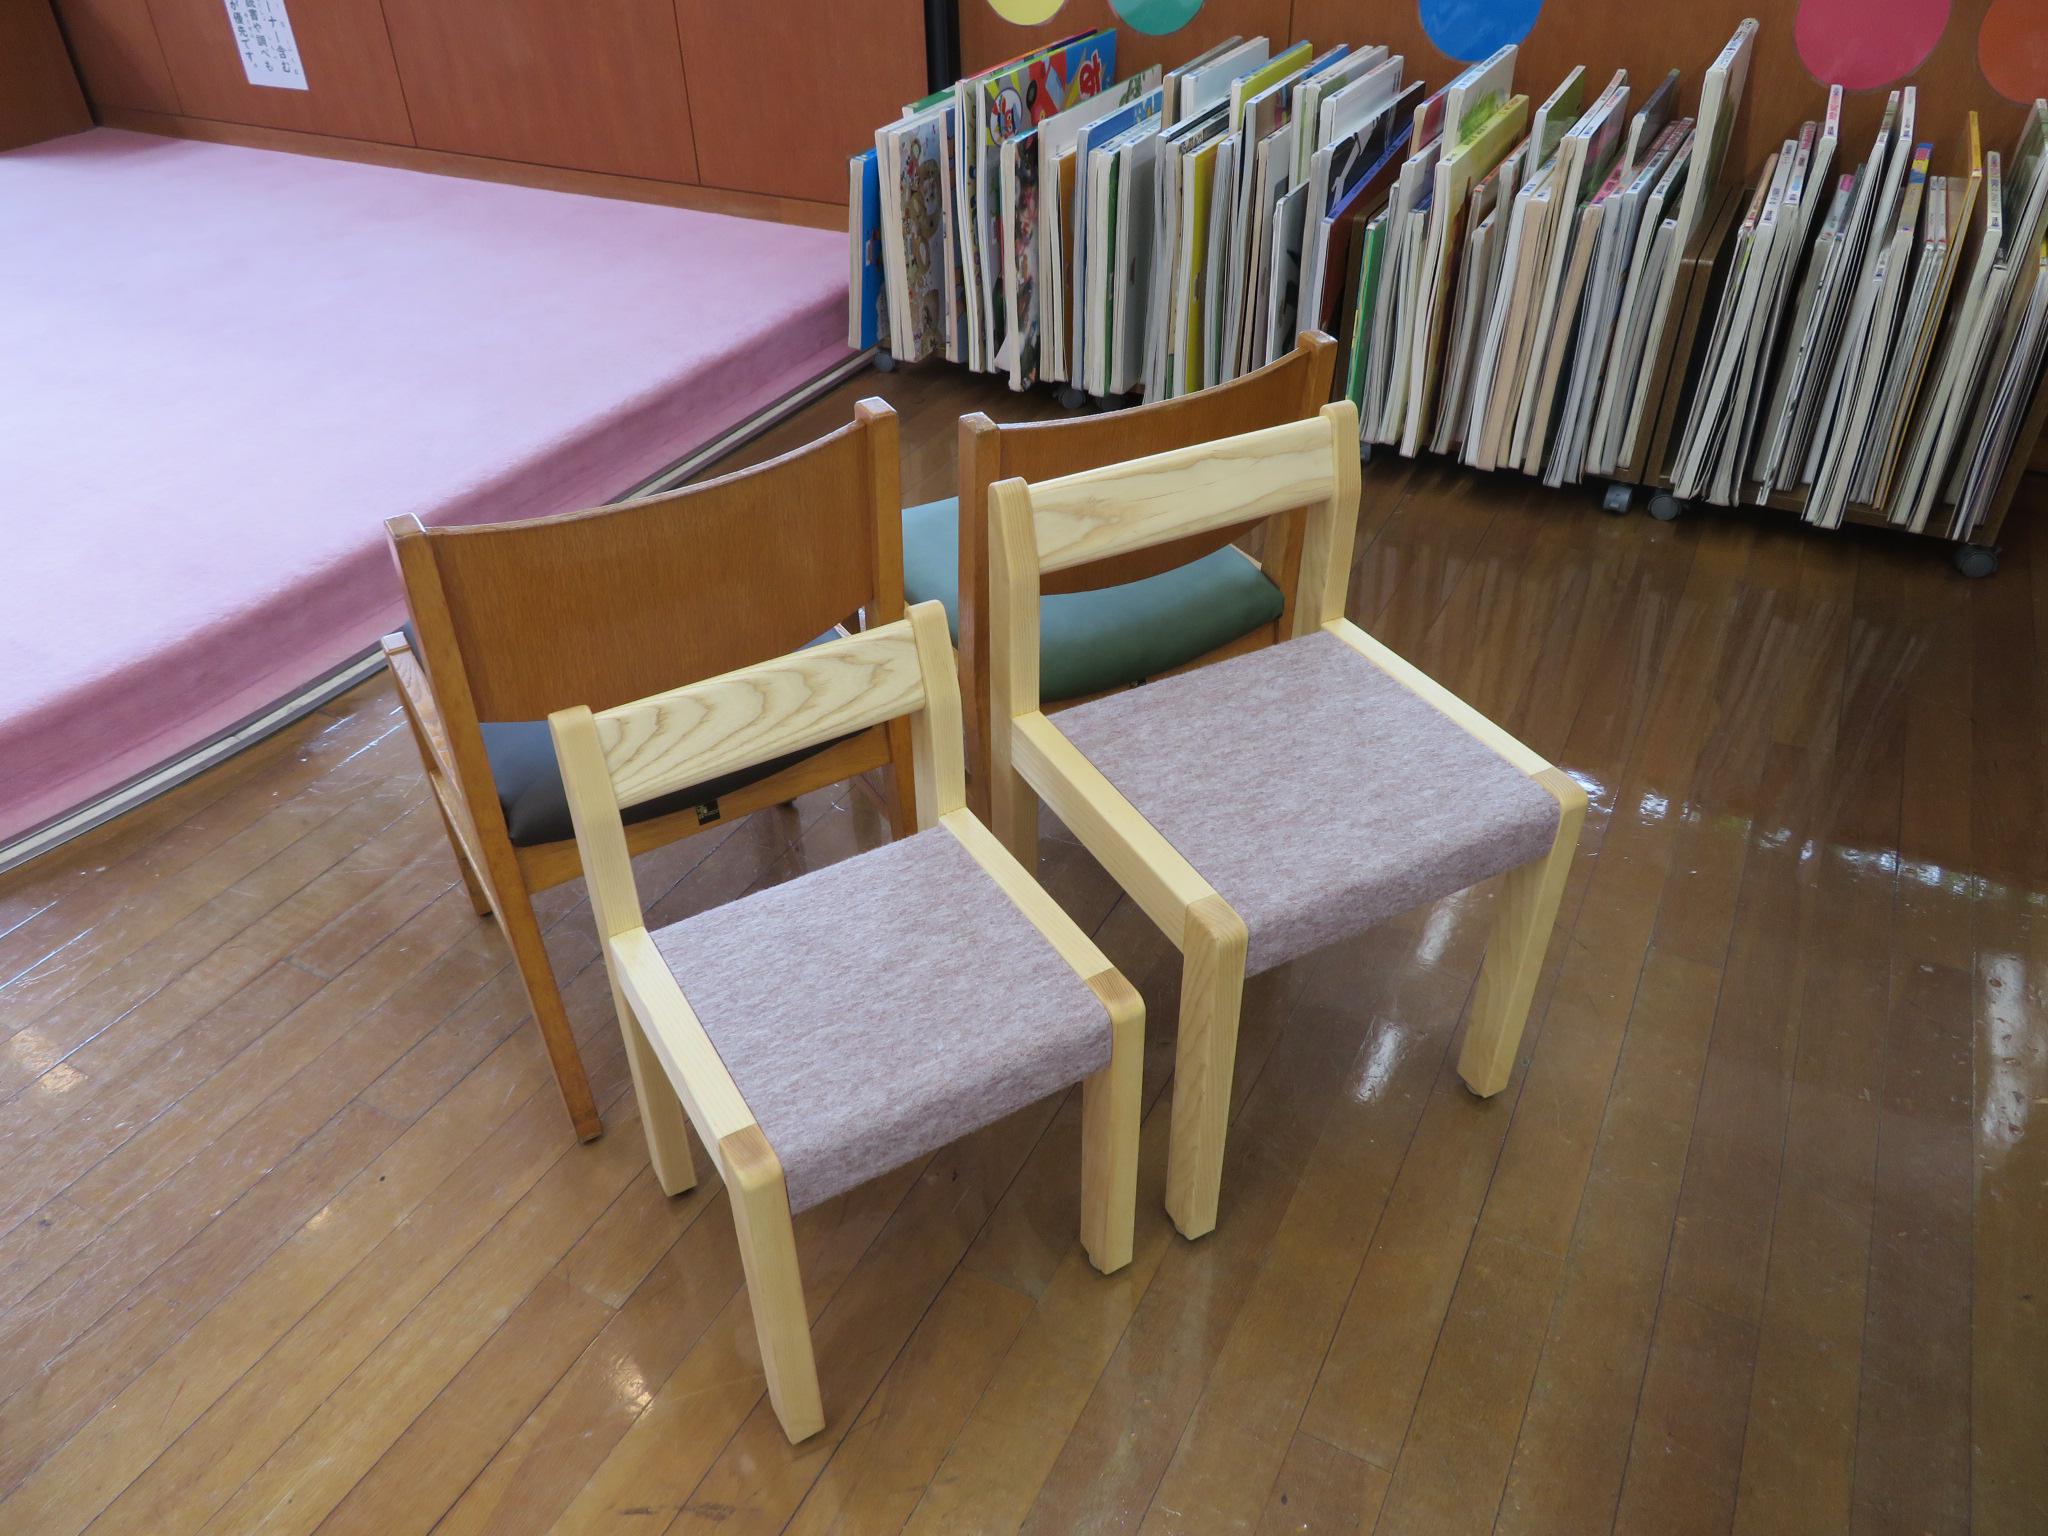 新しい子ども用の椅子の写真